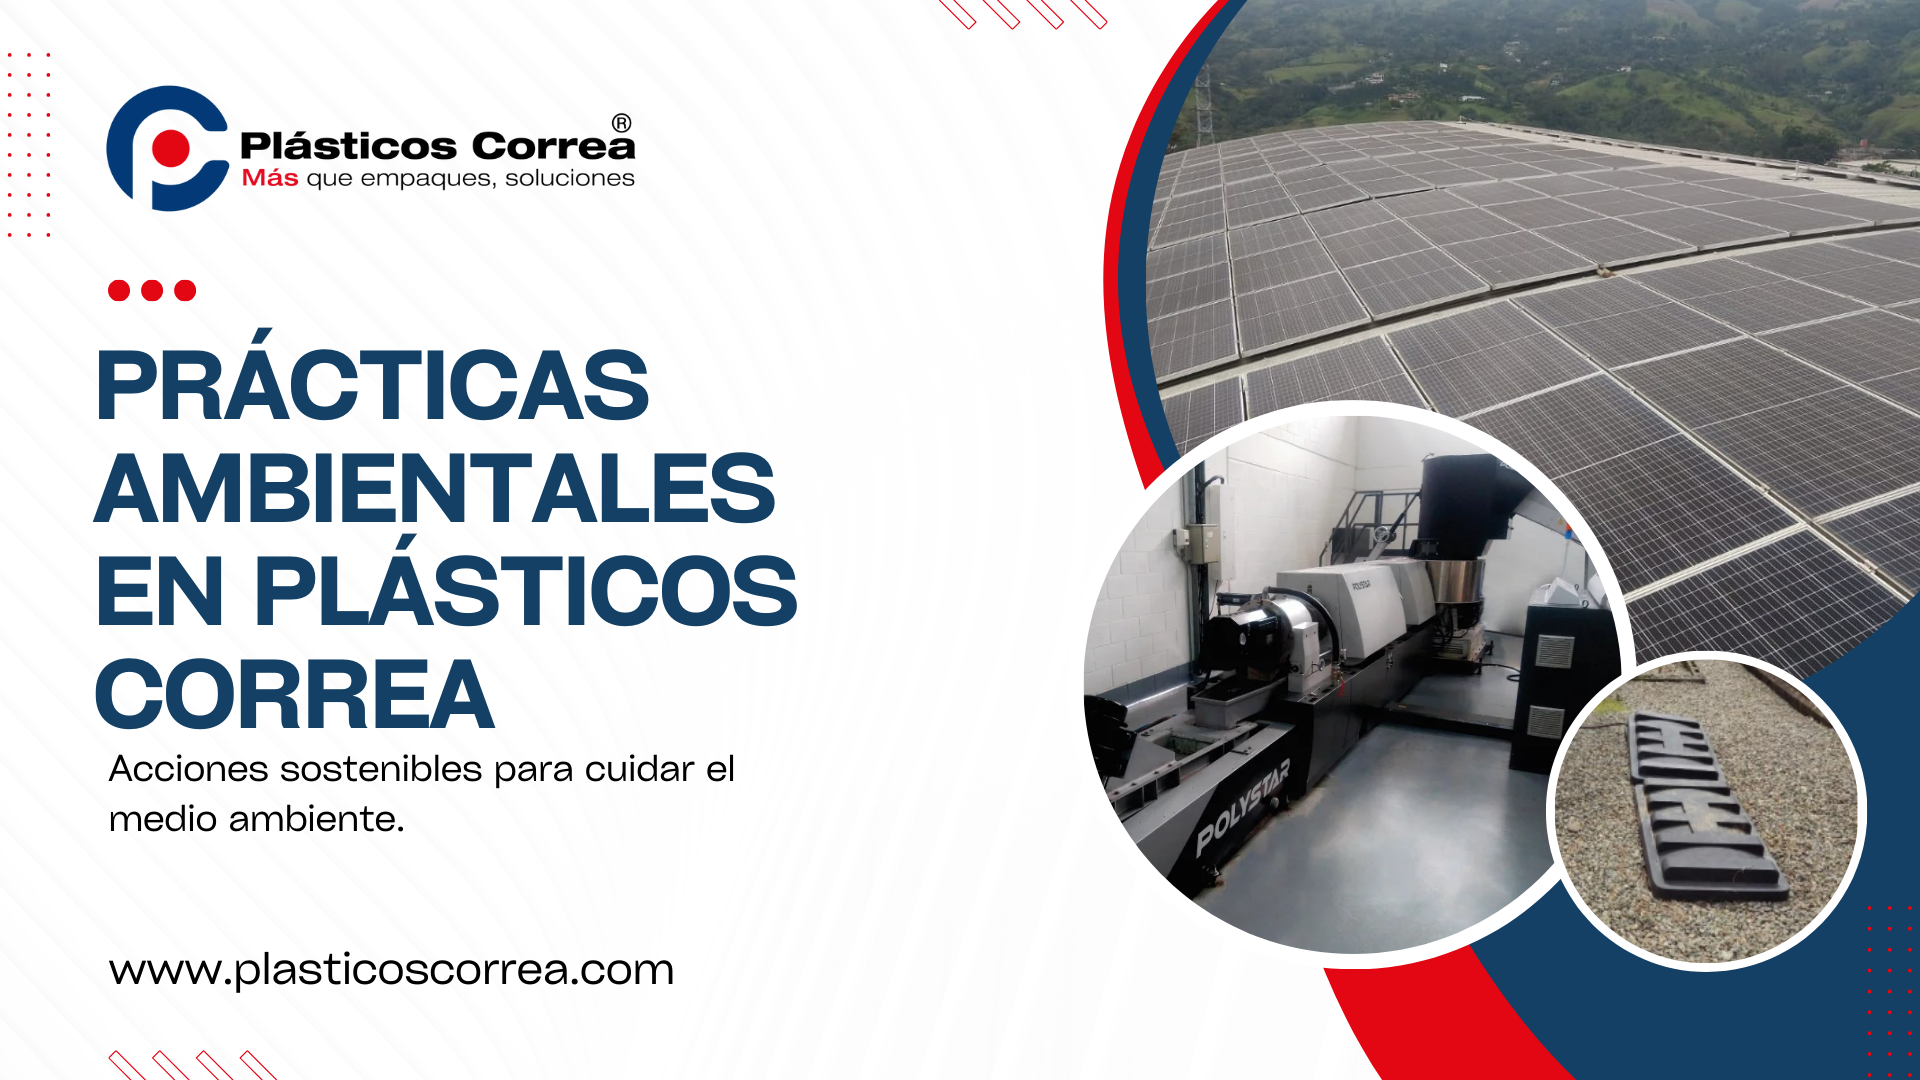 Prácticas ambientales en Plásticos Correa: Acciones sostenibles para cuidar el medio ambiente.